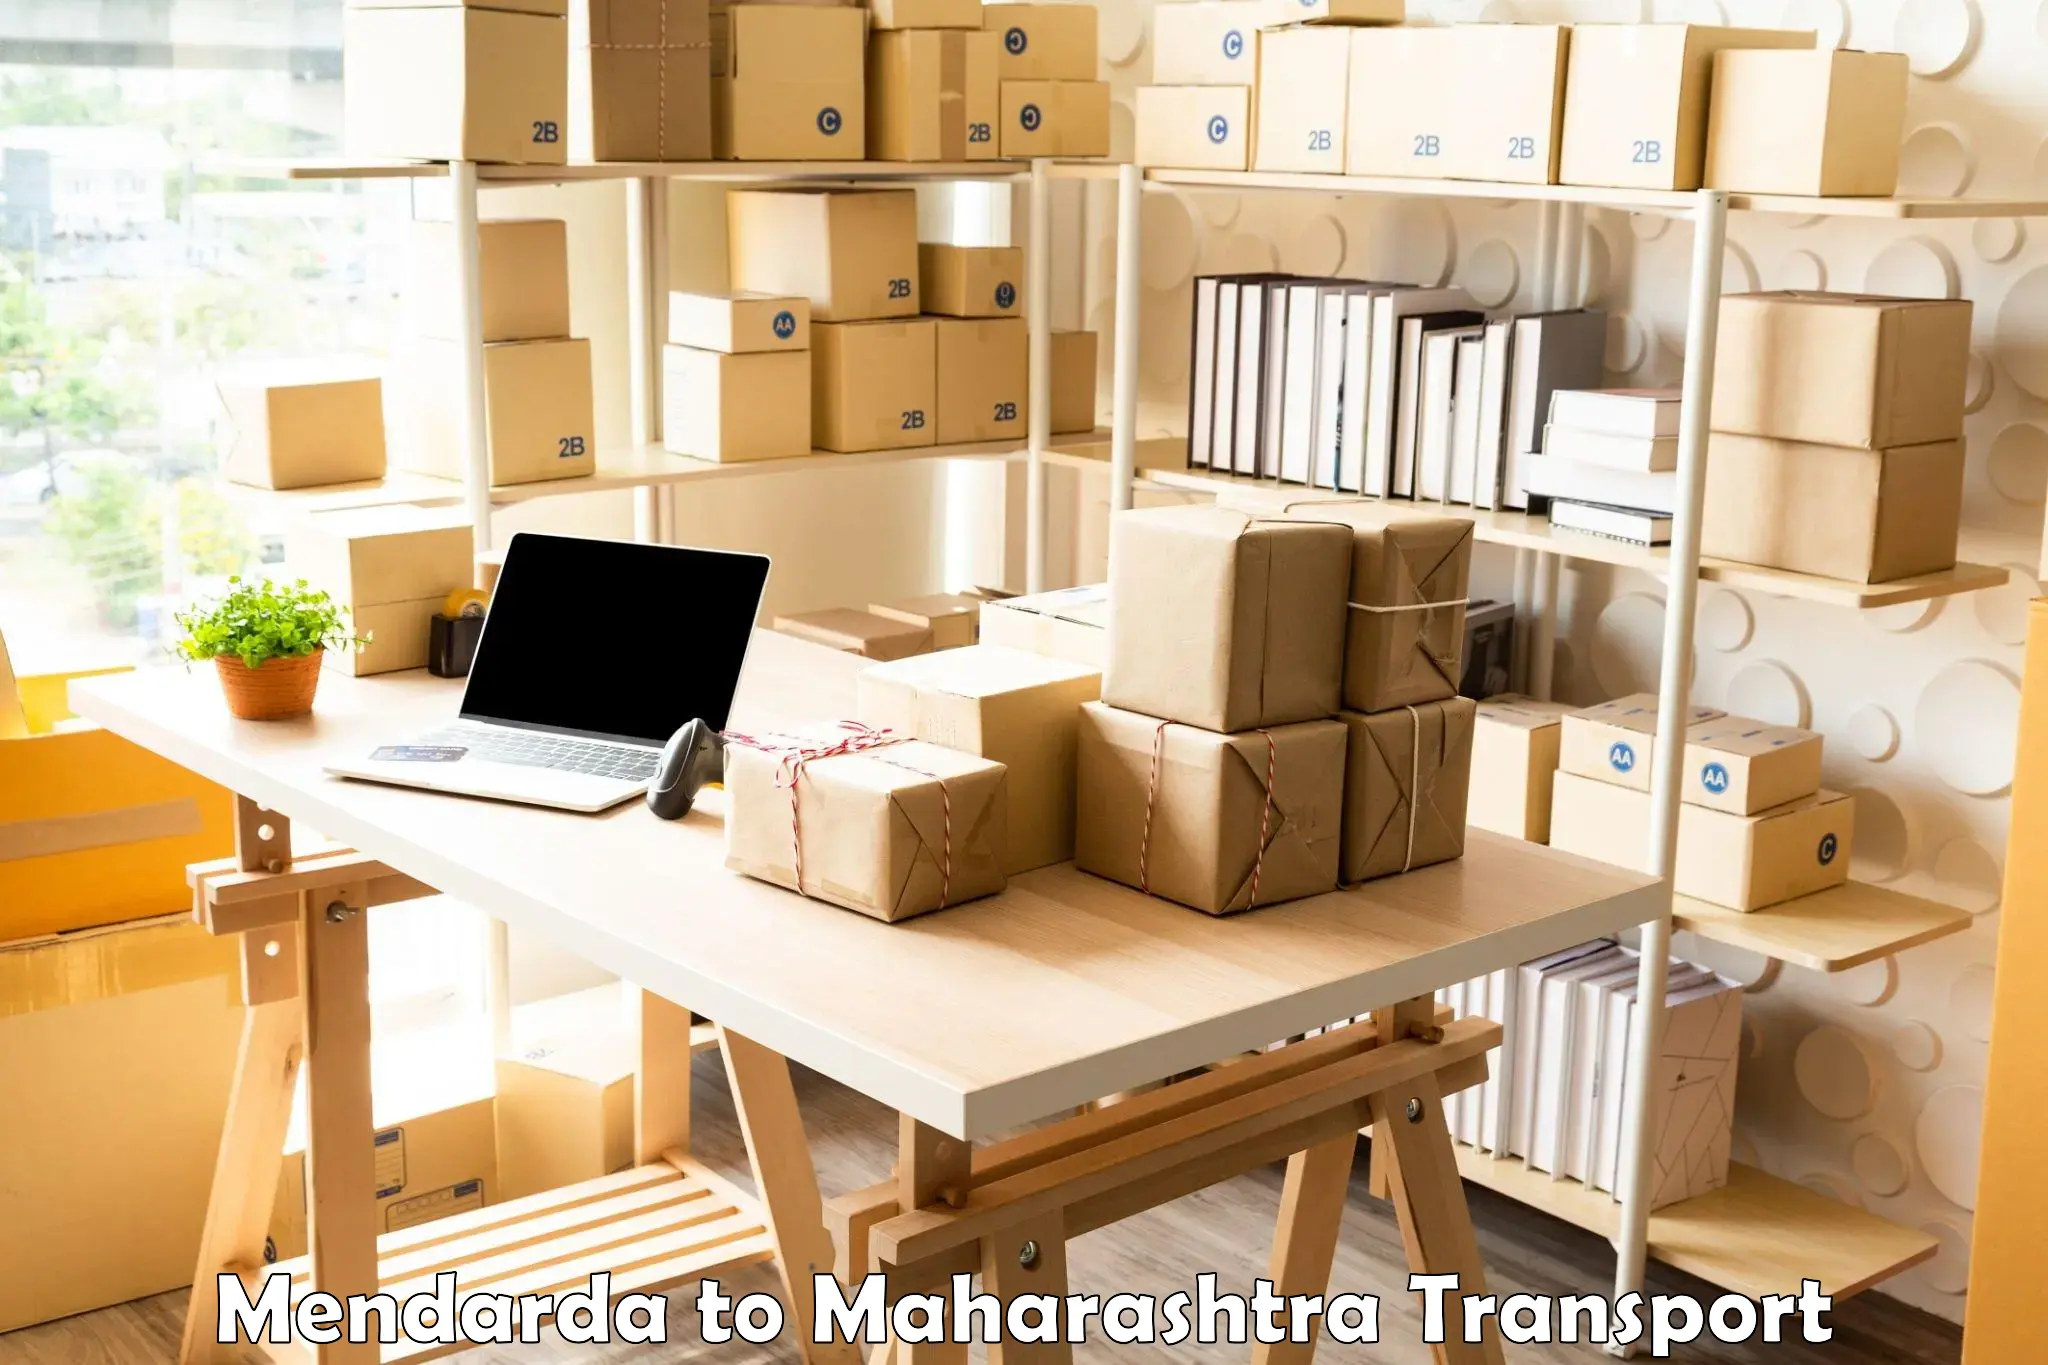 International cargo transportation services Mendarda to Bhandara